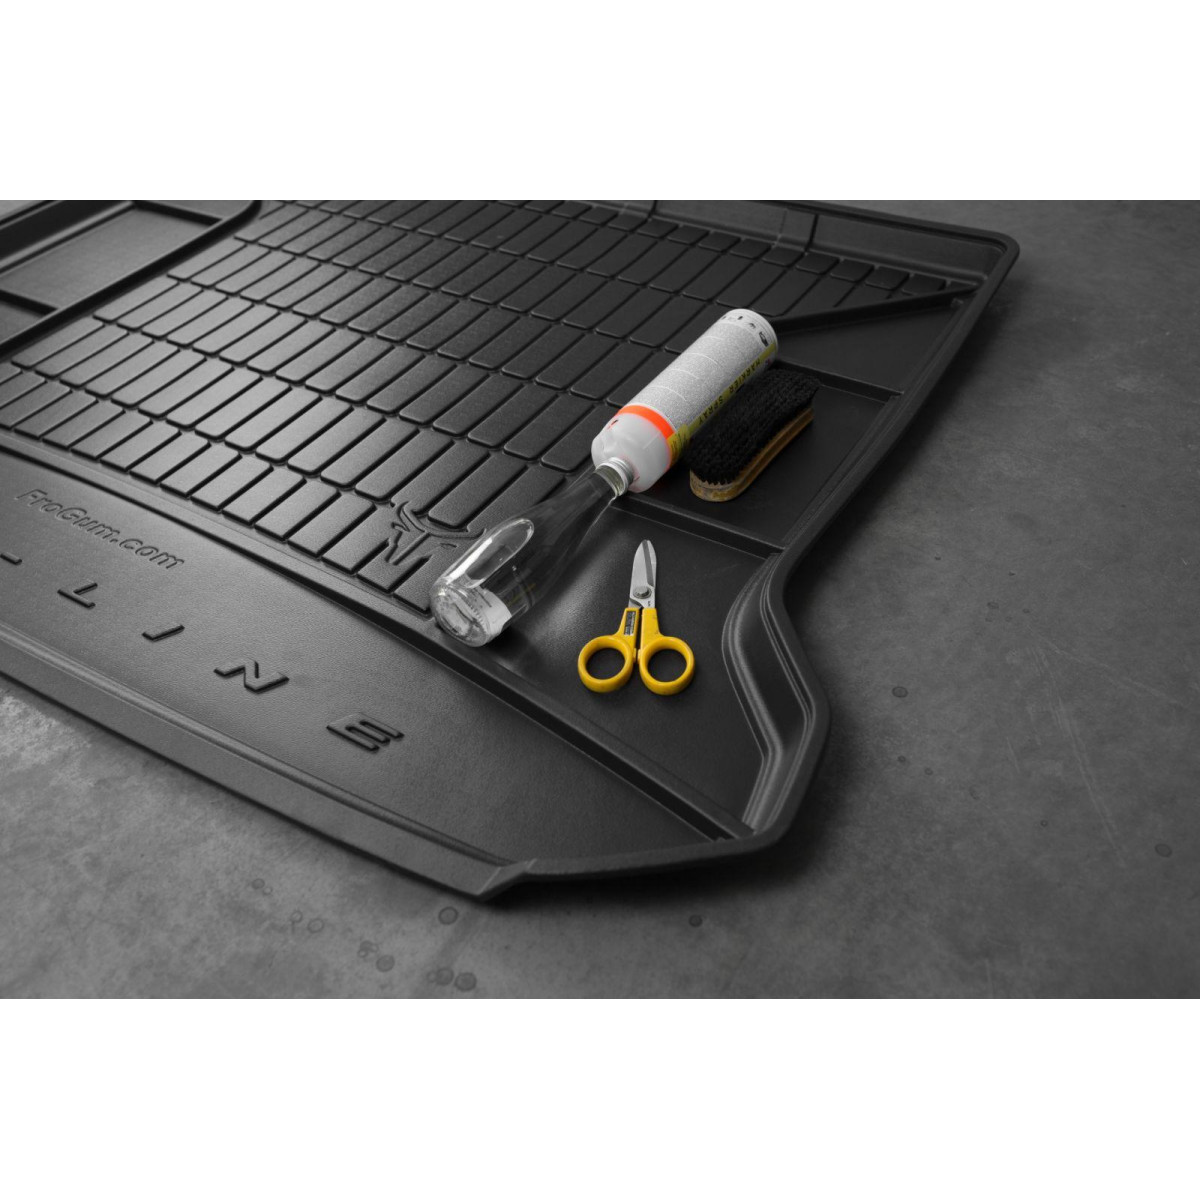 Guminis bagažinės kilimėlis Proline Citroen DS7 Crossback nuo 2017m. / viršutinė dalis / paaukštintais kraštais